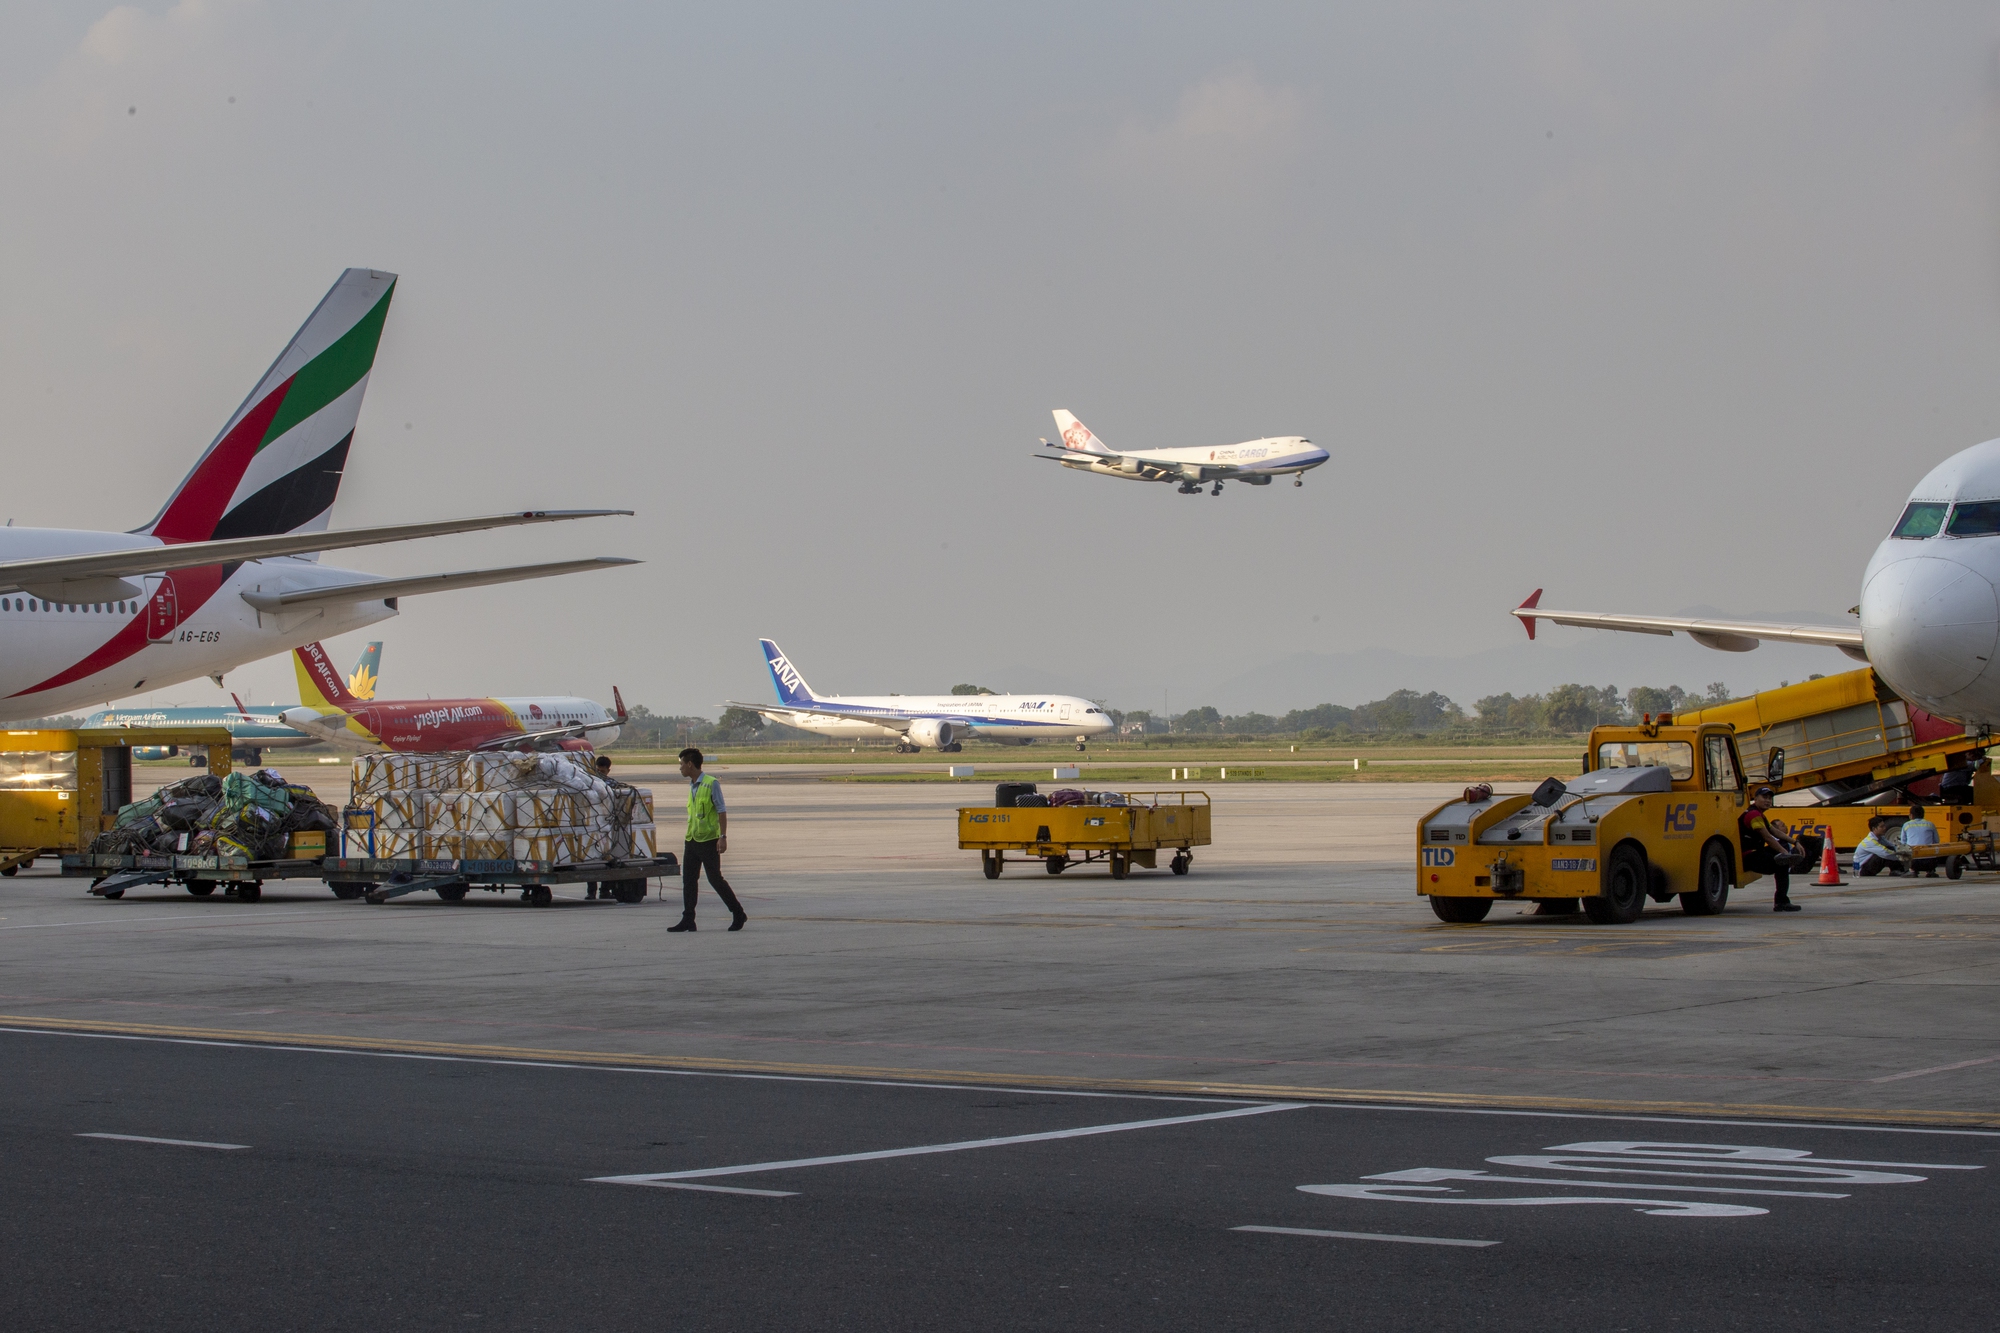 Sân bay Nội Bài và Tân Sơn Nhất thử nghiệm mô hình ACDM ai hưởng lợi